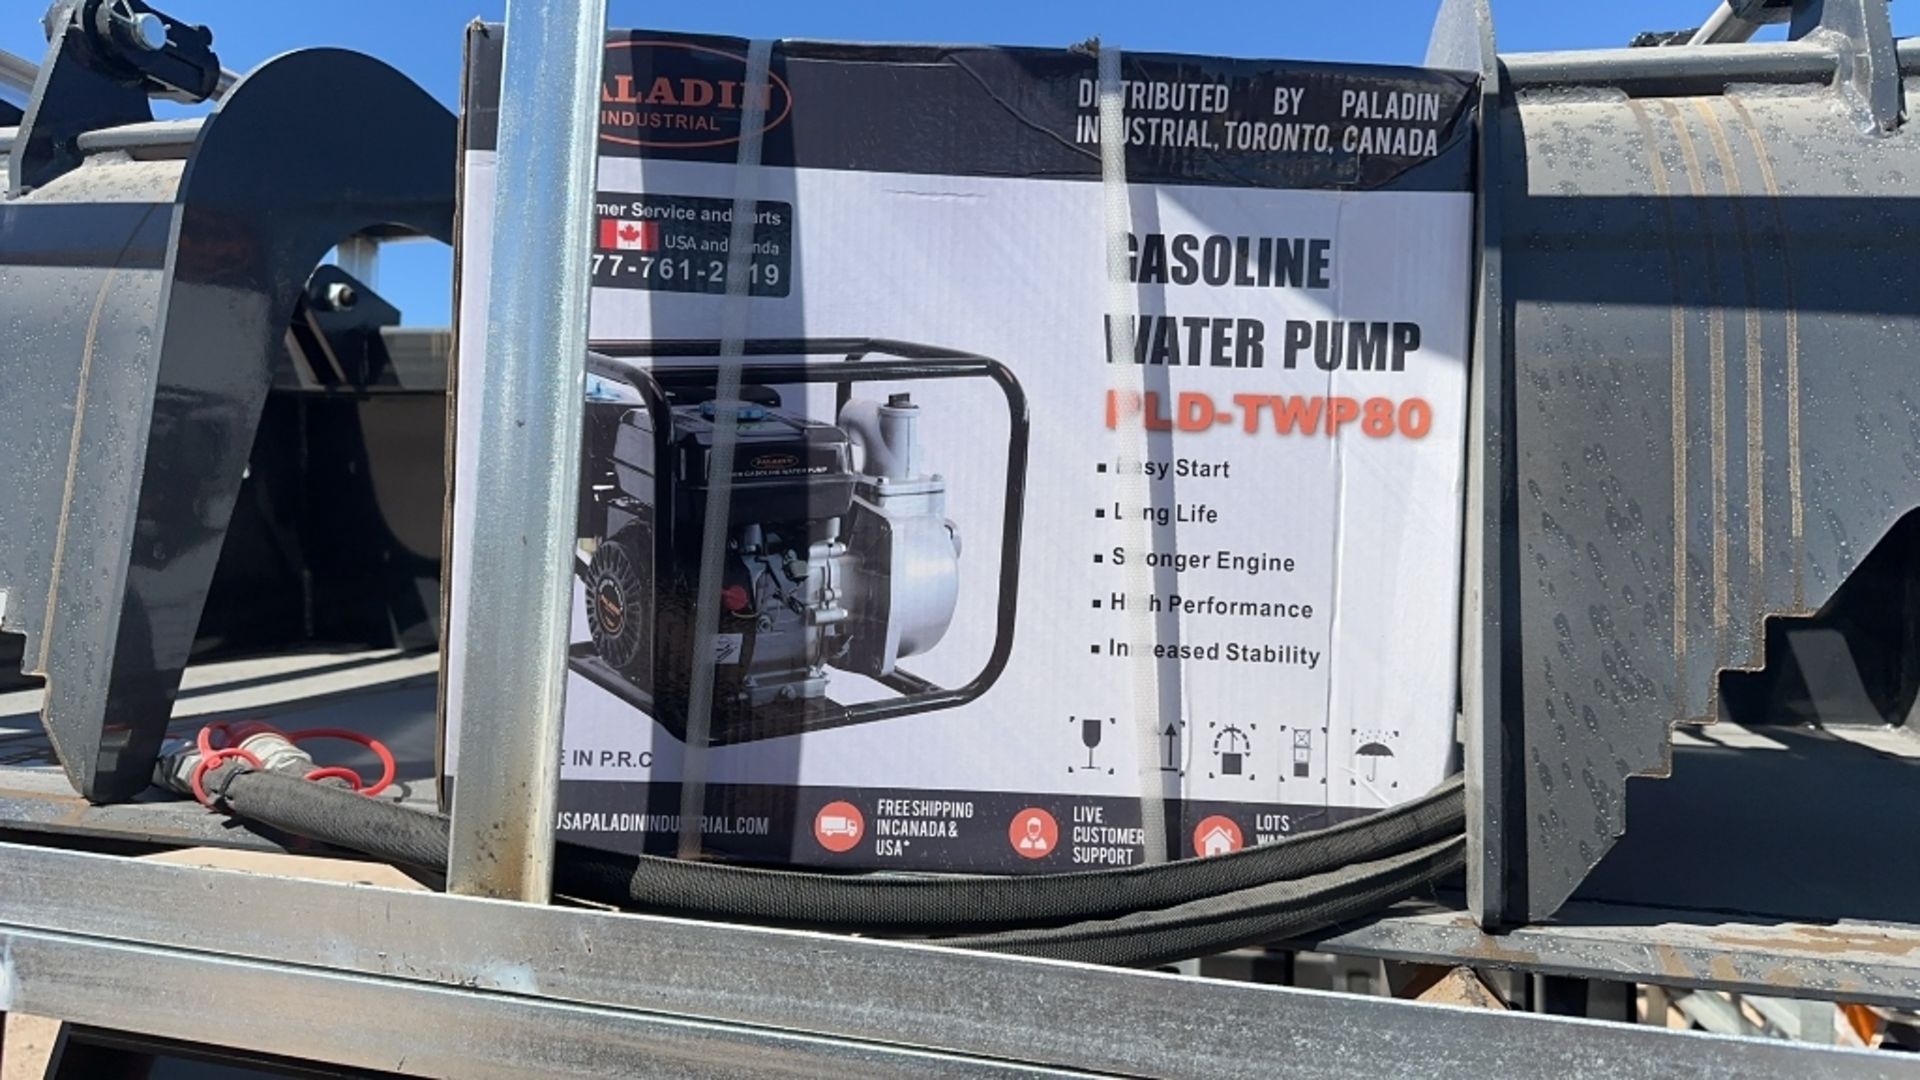 Paladin water pump - Image 4 of 16